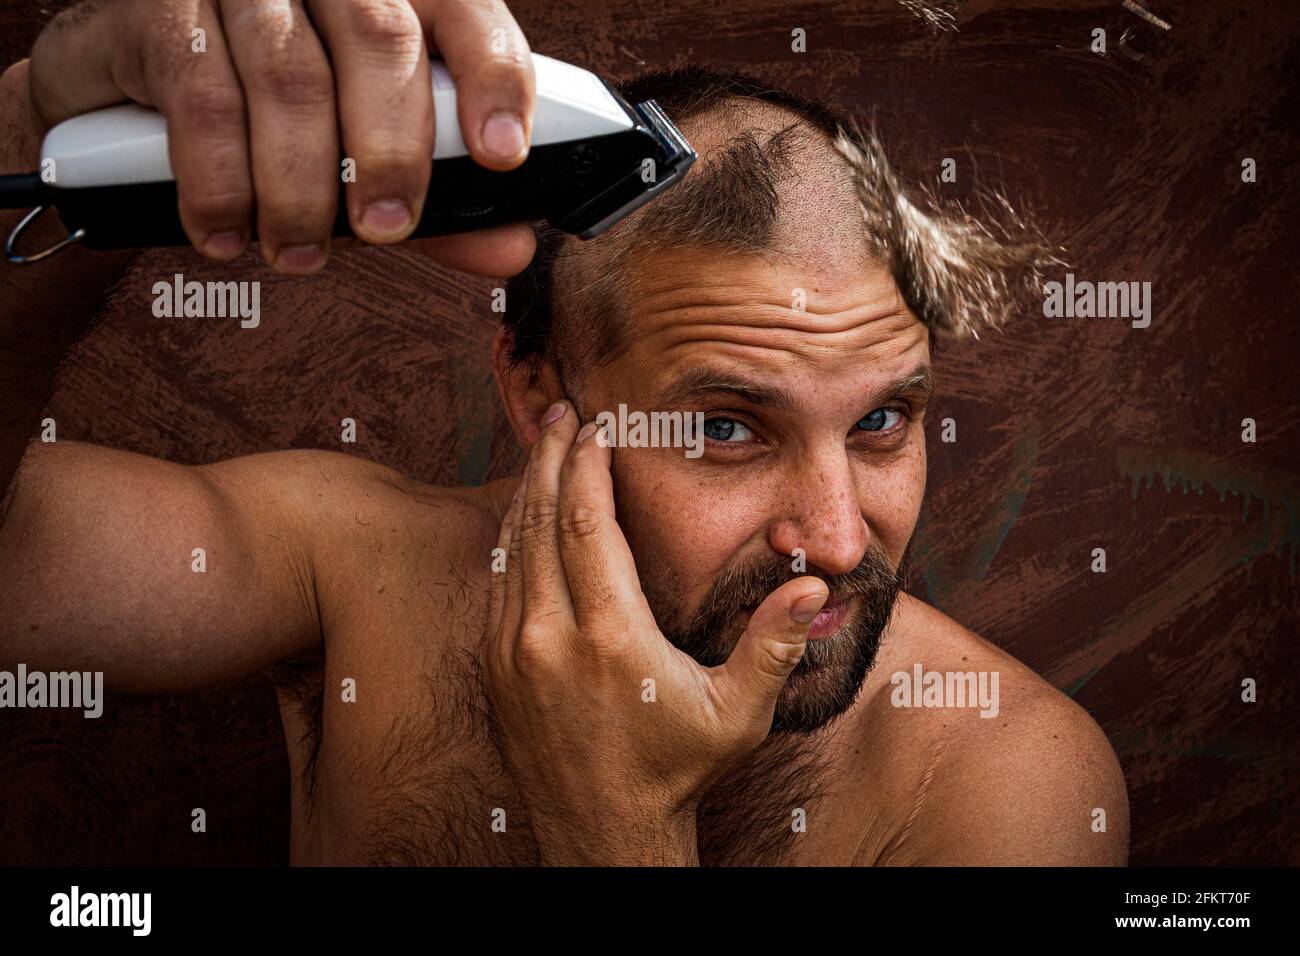 Kaukasischer Mann, der versucht, seinen Kopf mit einem elektrischen  Rasiermesser zu rasieren. Ein brutaler Glatze hält einen Rasierer in der  Hand und rasiert Stoppeln auf einem metallischen Hintergrund  Stockfotografie - Alamy